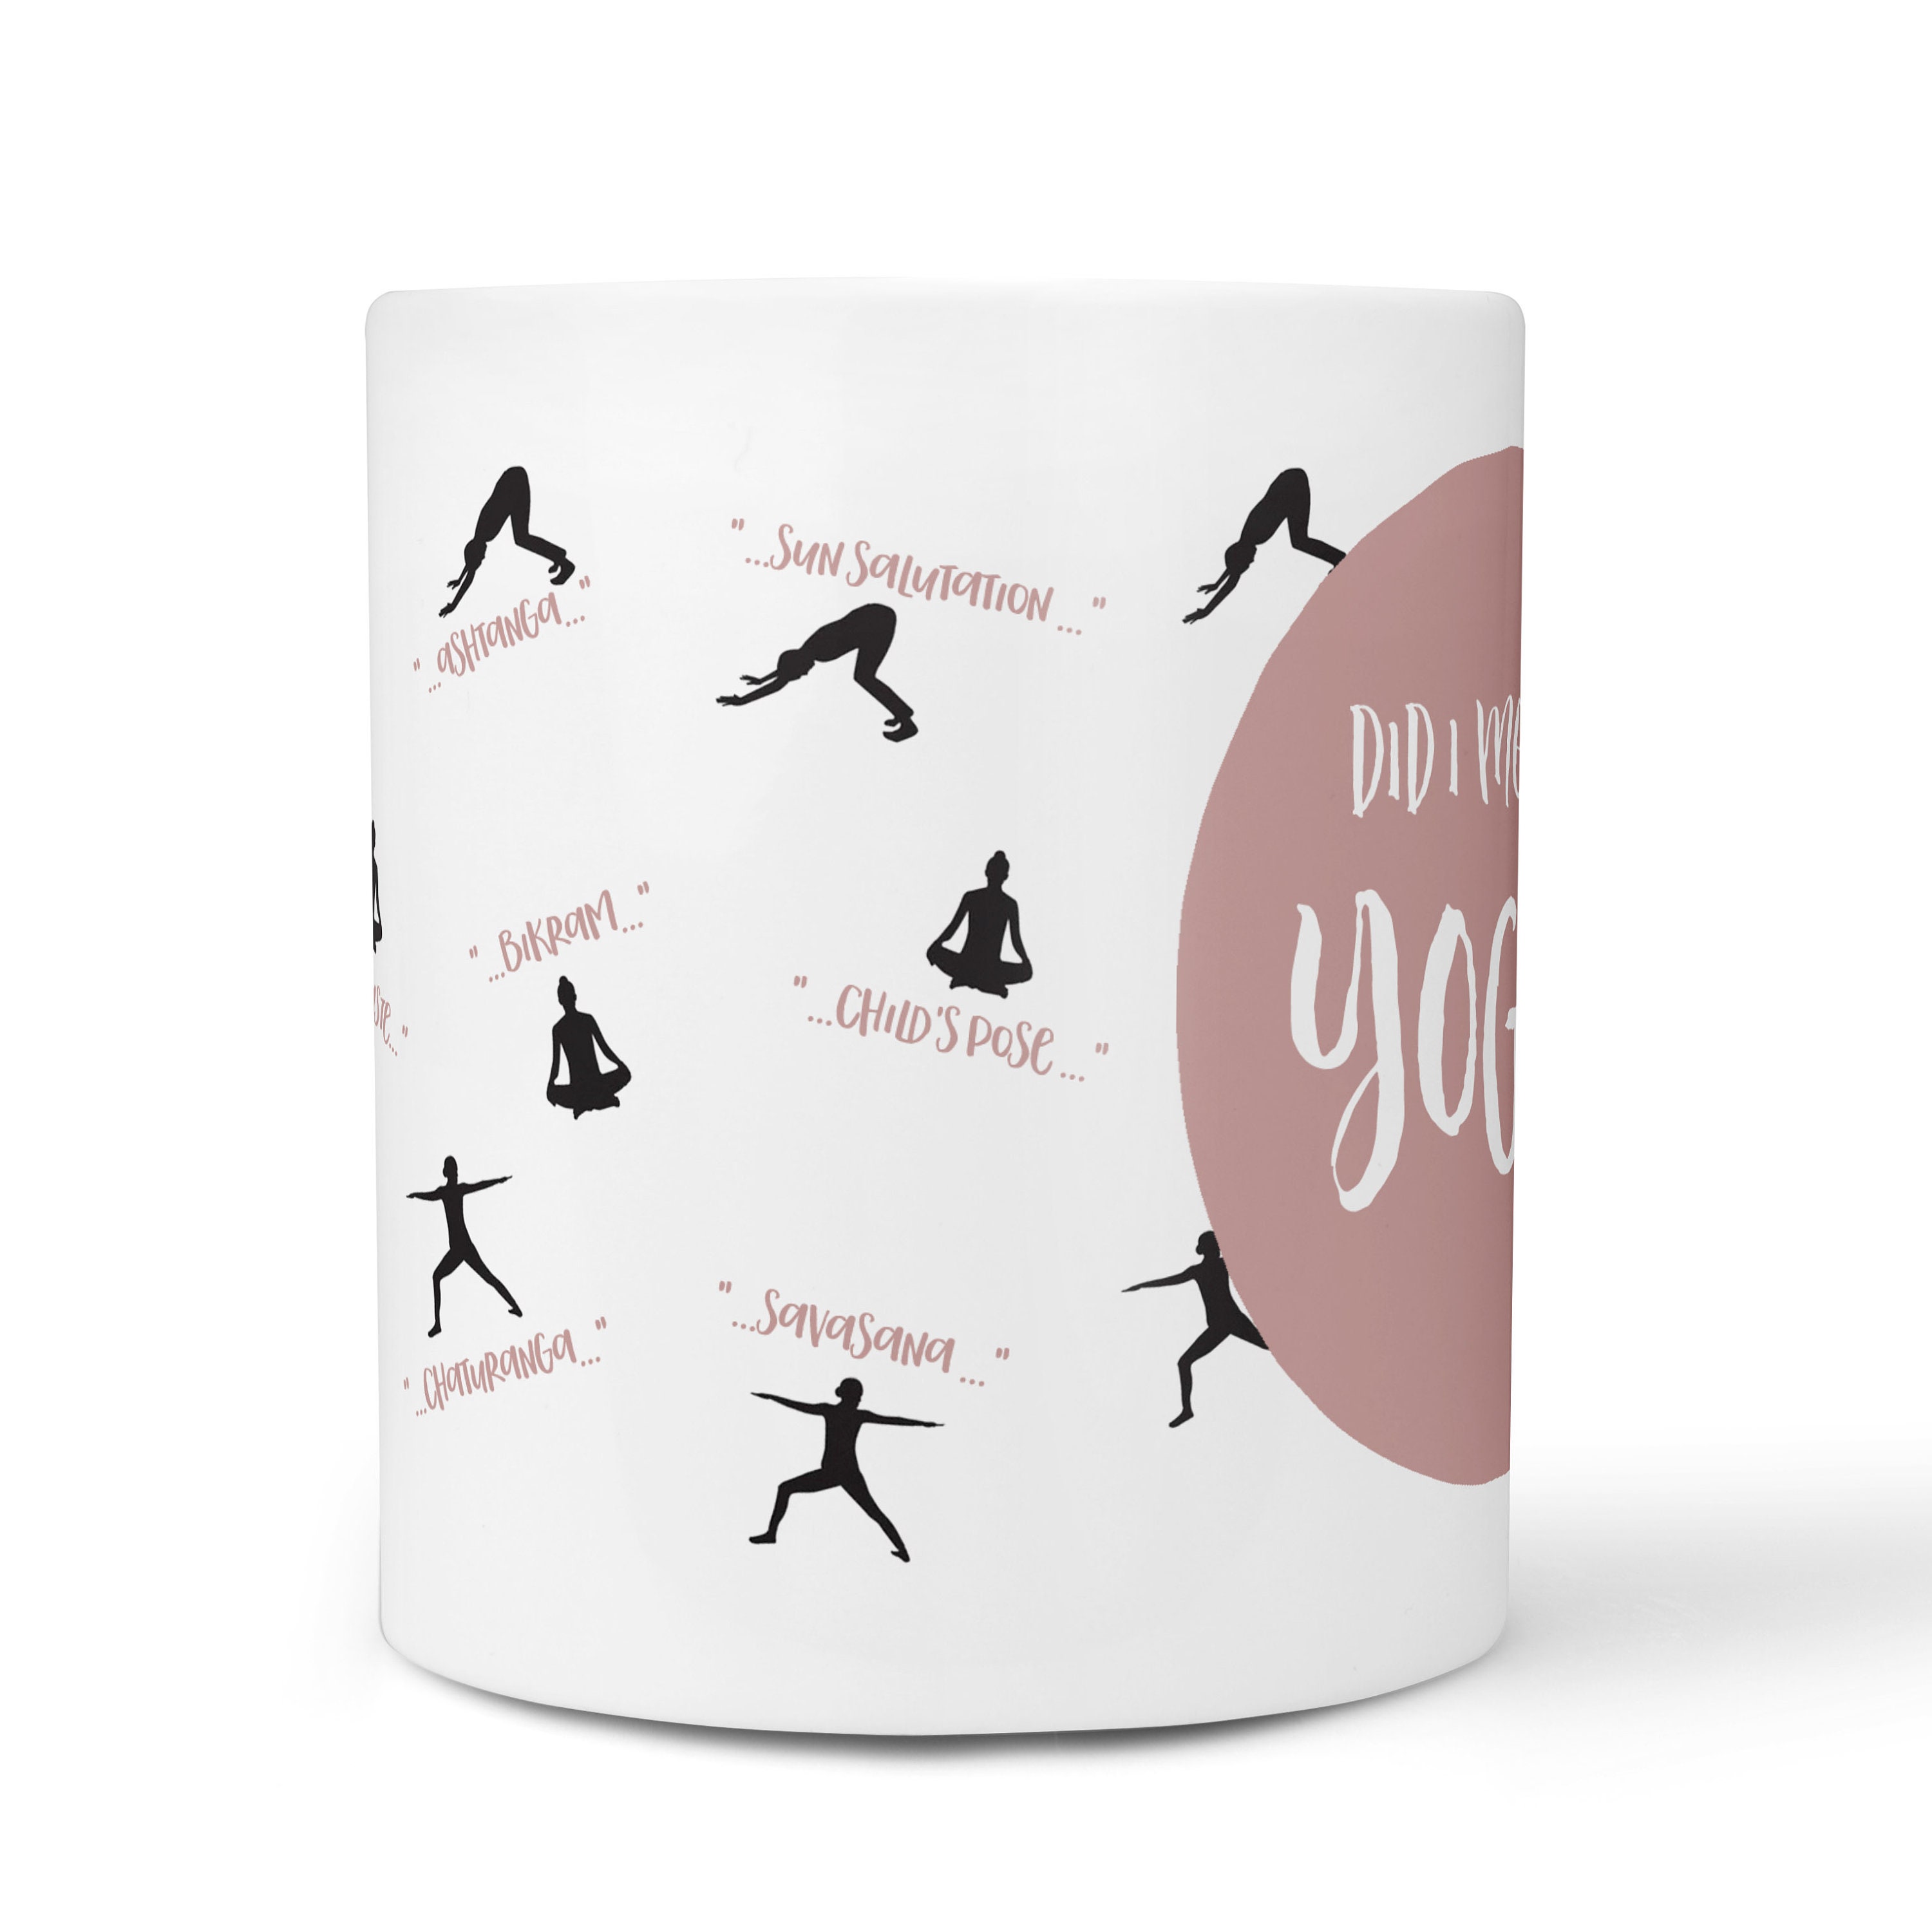 Personalised Yoga Mug With Yoga Salutation Print Yoga Gift for